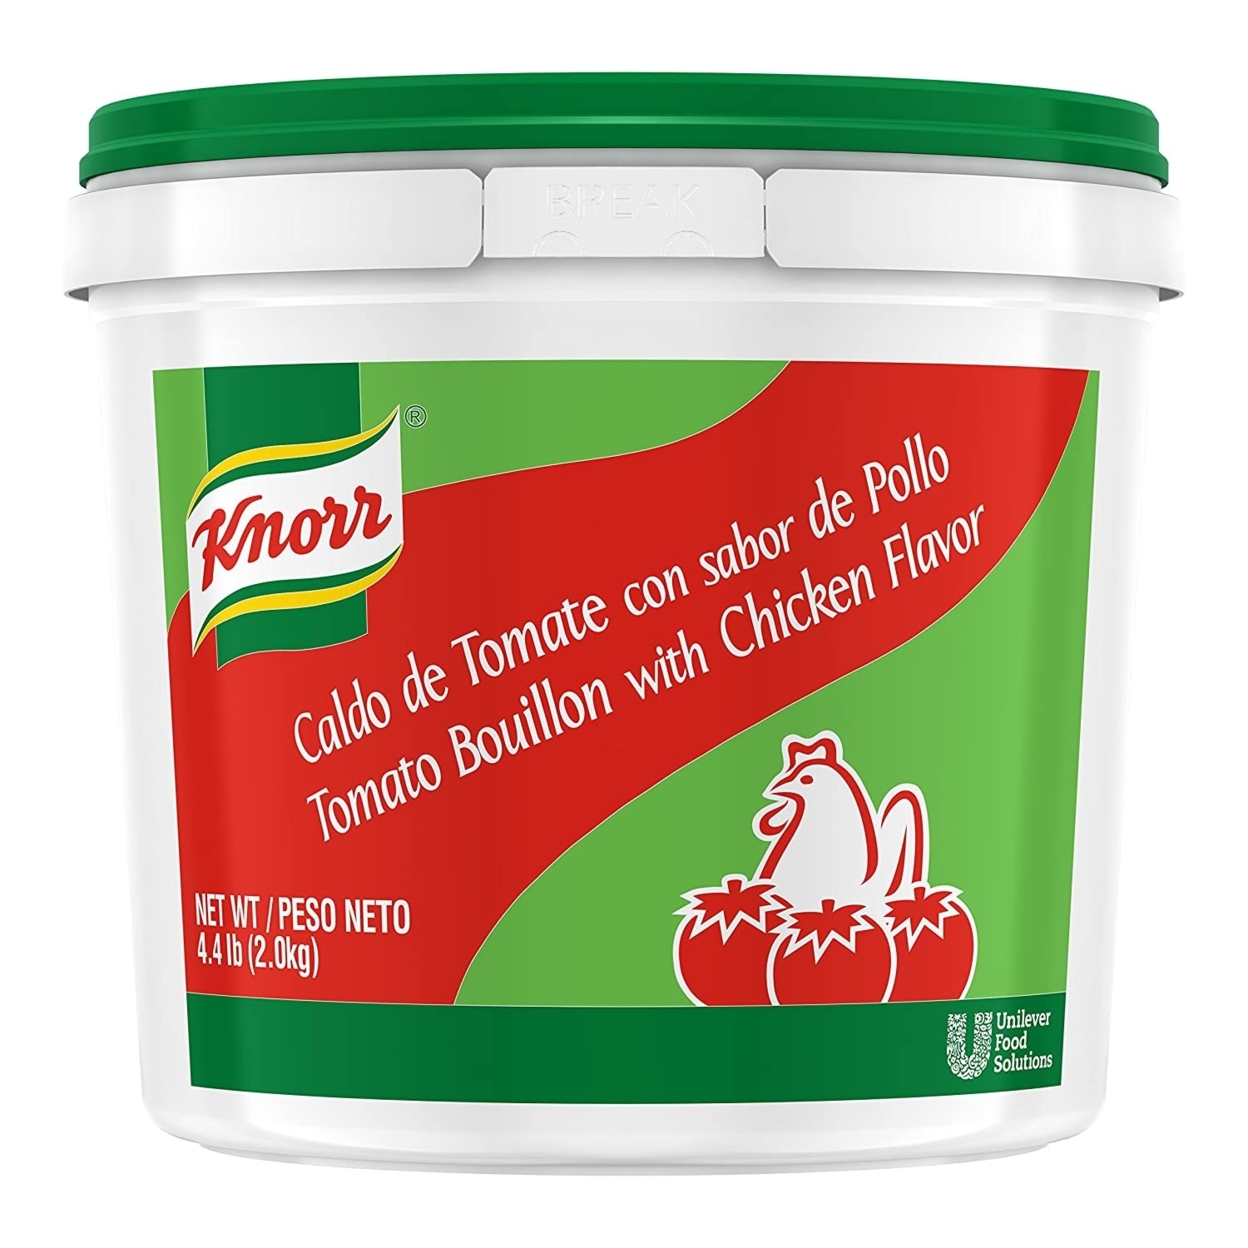 Knorr Tomato Bouillon W/ Chicken Flavor - 4.4lbs